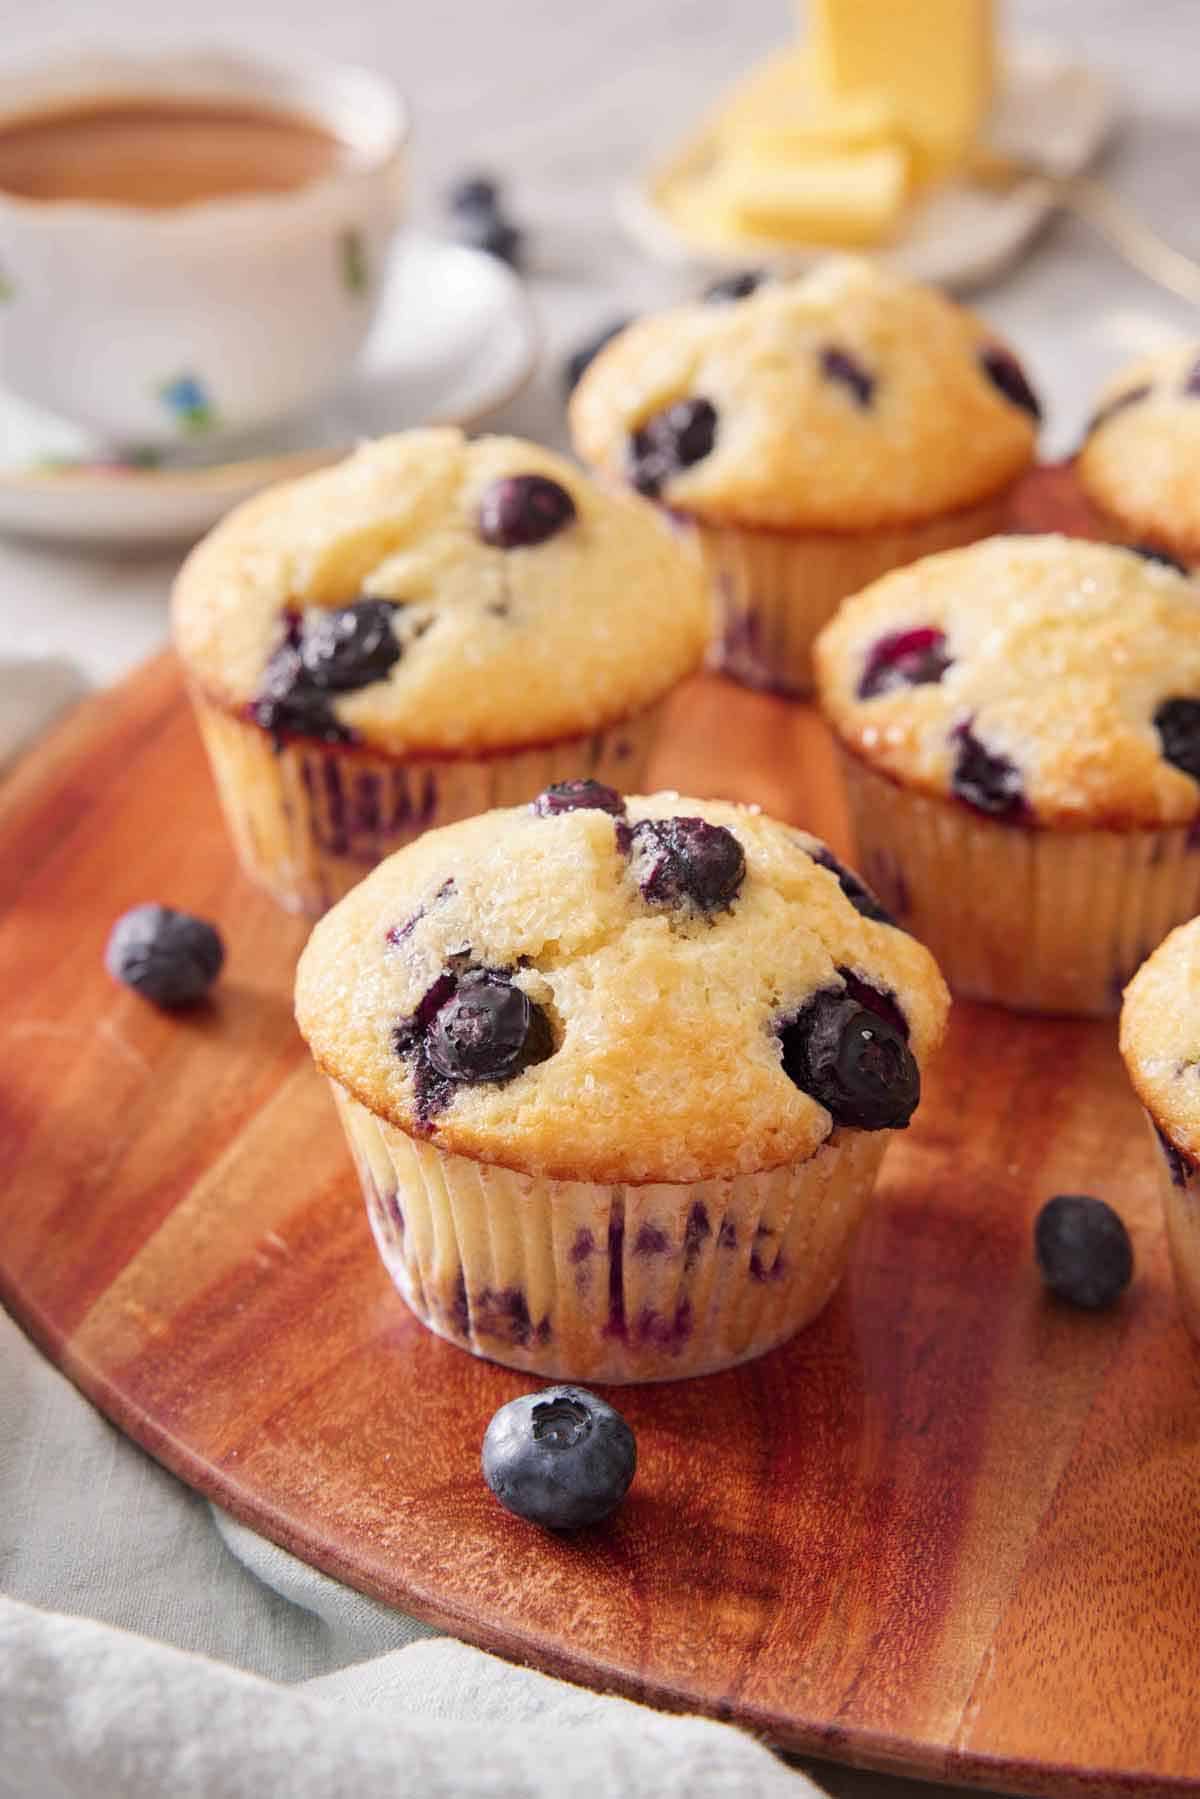 Blueberry Muffins - Preppy Kitchen